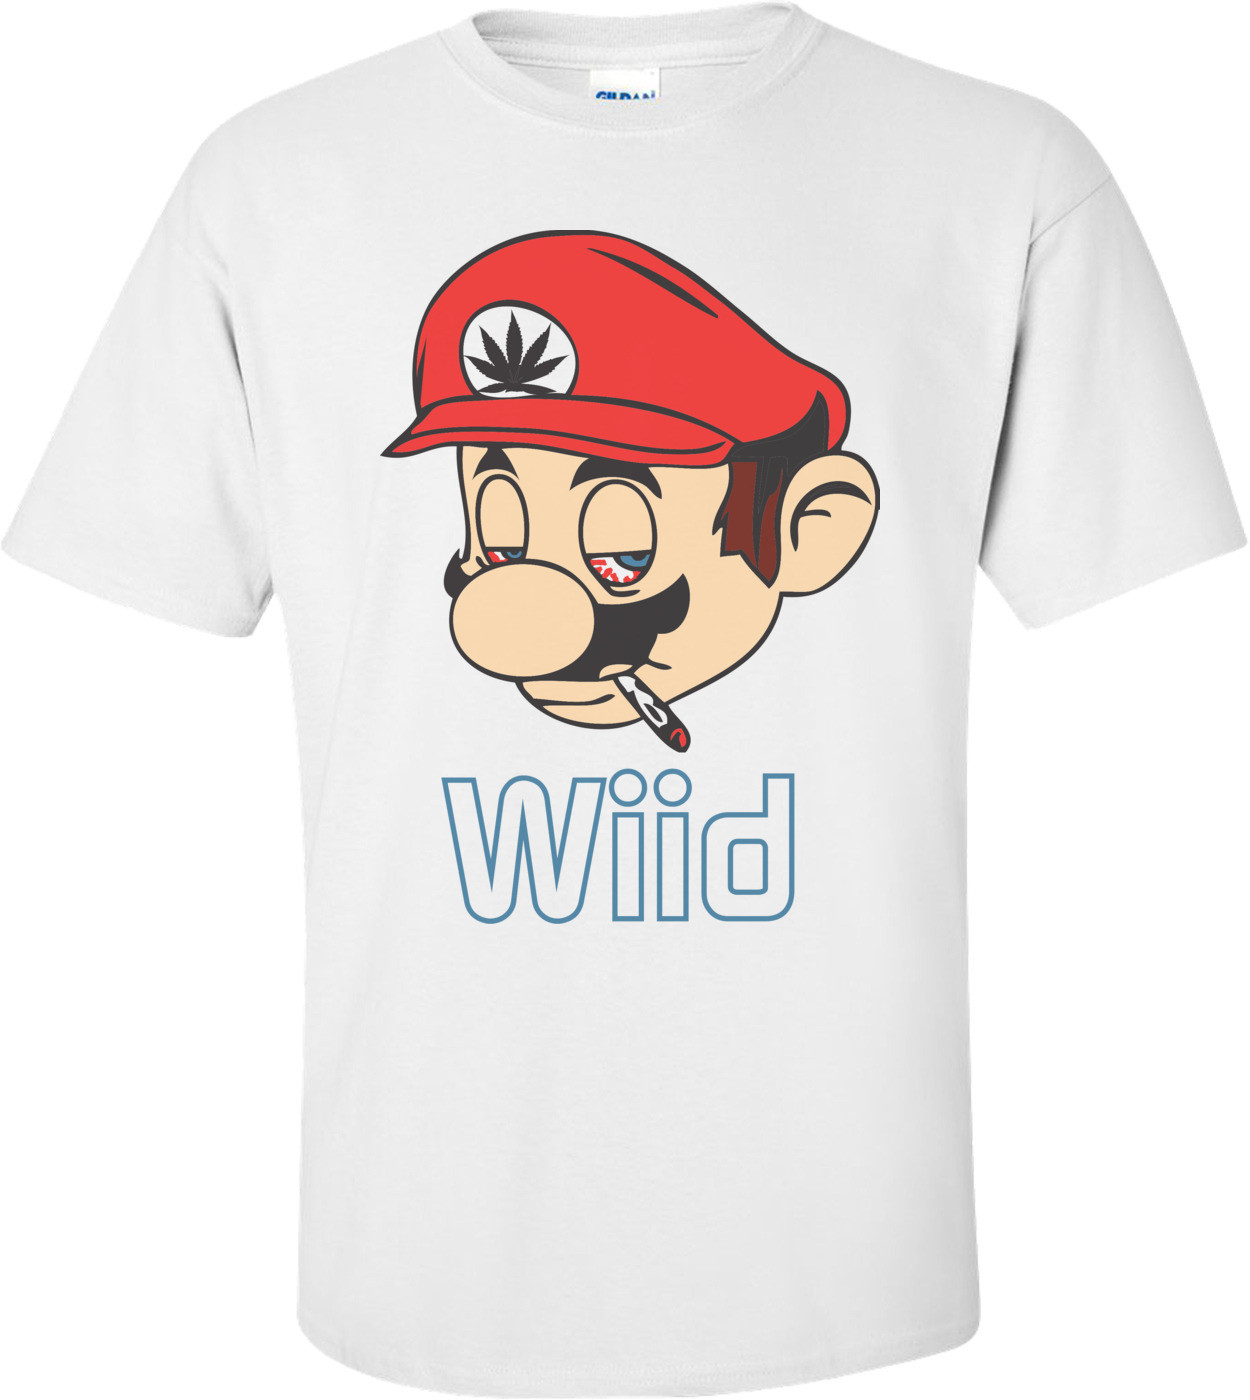 Wiid - High Mario